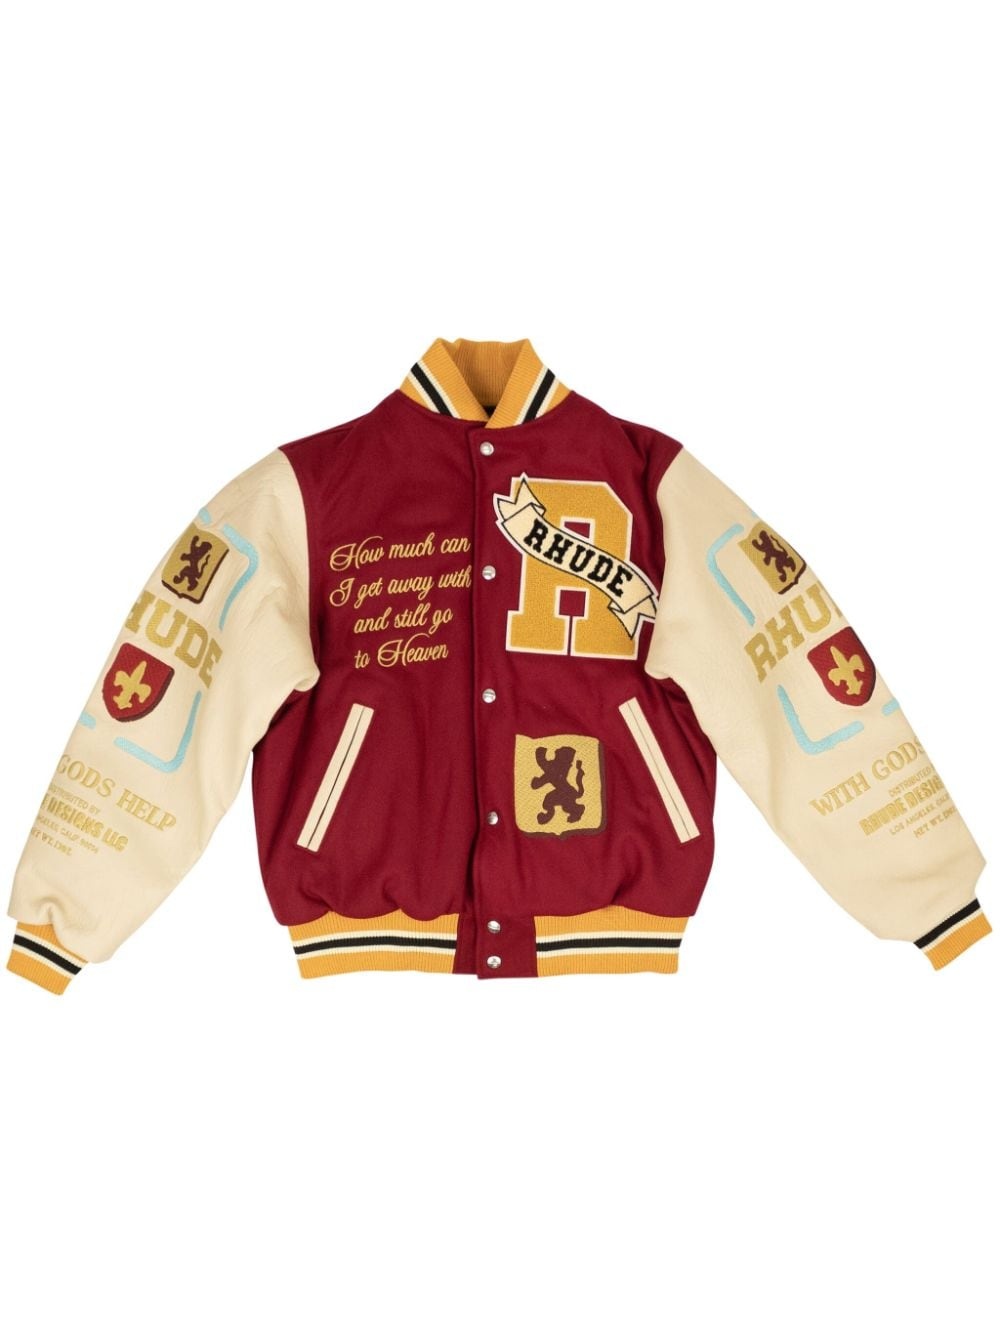 Le VAlley varsity jacket - 1